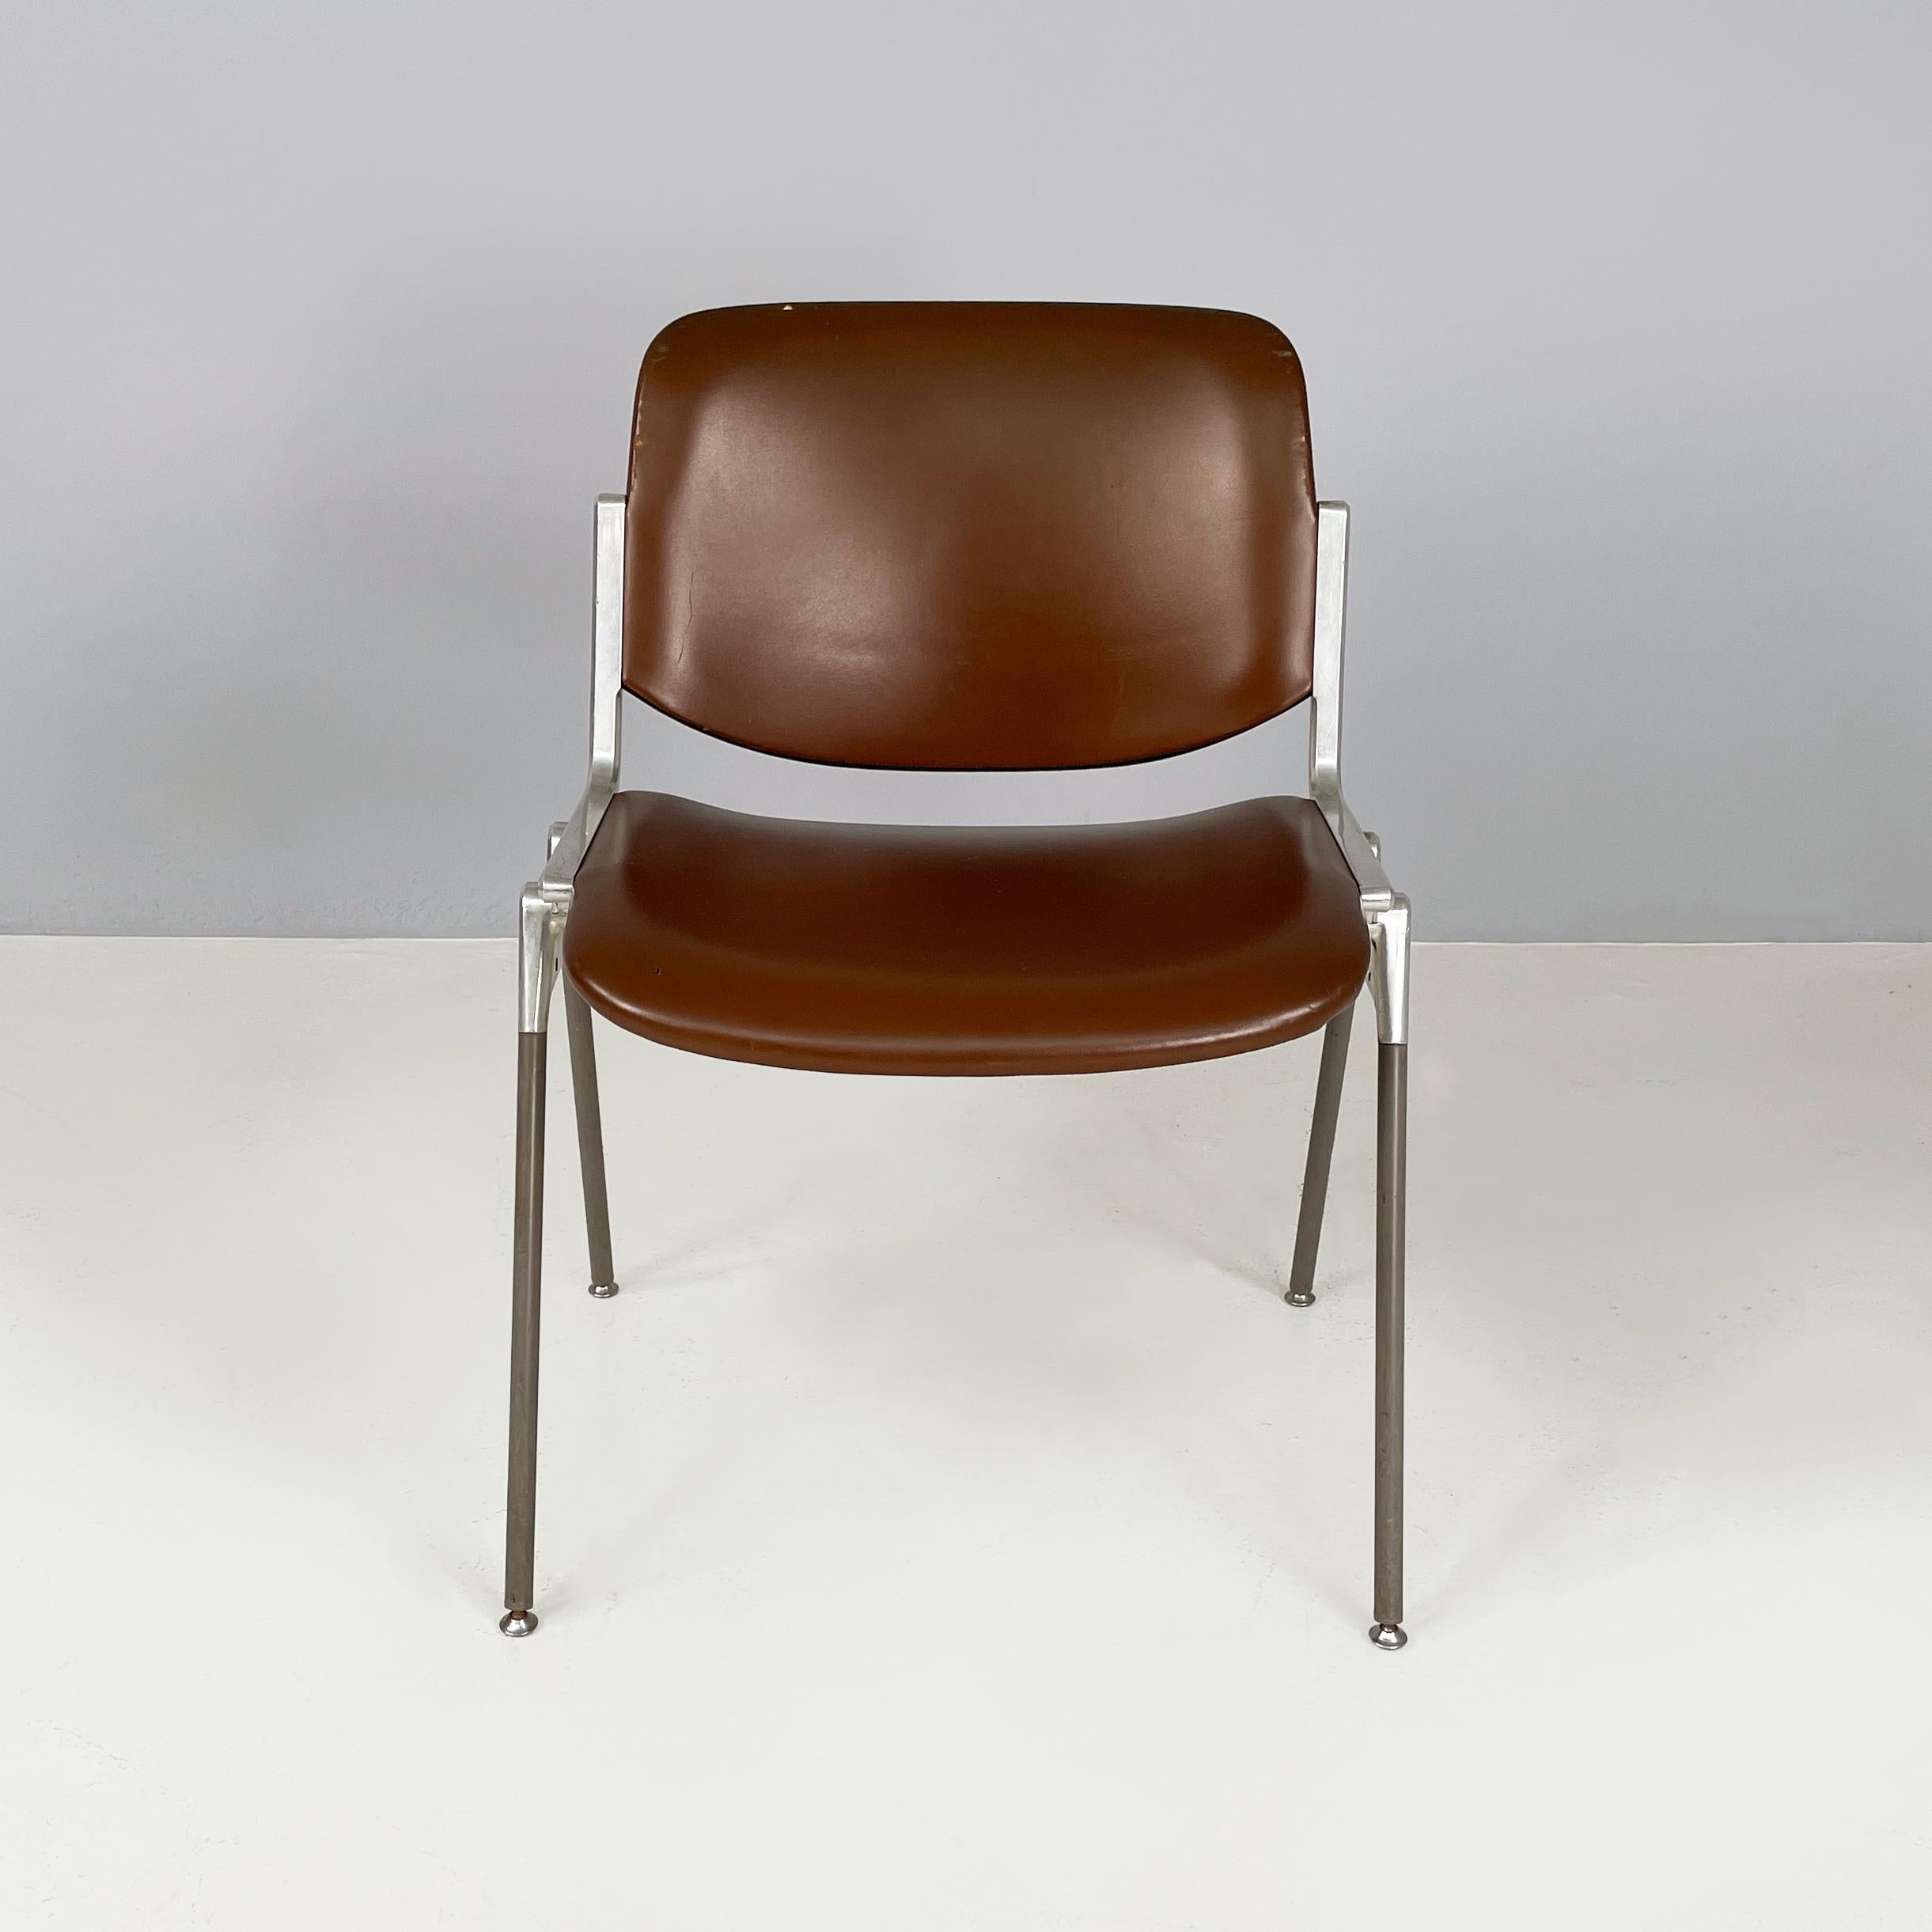 Italienischer Stuhl DSC von Giancarlo Piretti für Anonima Castelli, Mitte des Jahrhunderts, 1970er Jahre
Stuhl Mod. DSC gepolstert und mit dunkelbraunem Leder bezogen. Sitz und Rückenlehne sind rechteckig mit abgerundeten Ecken. Das robuste Gestell